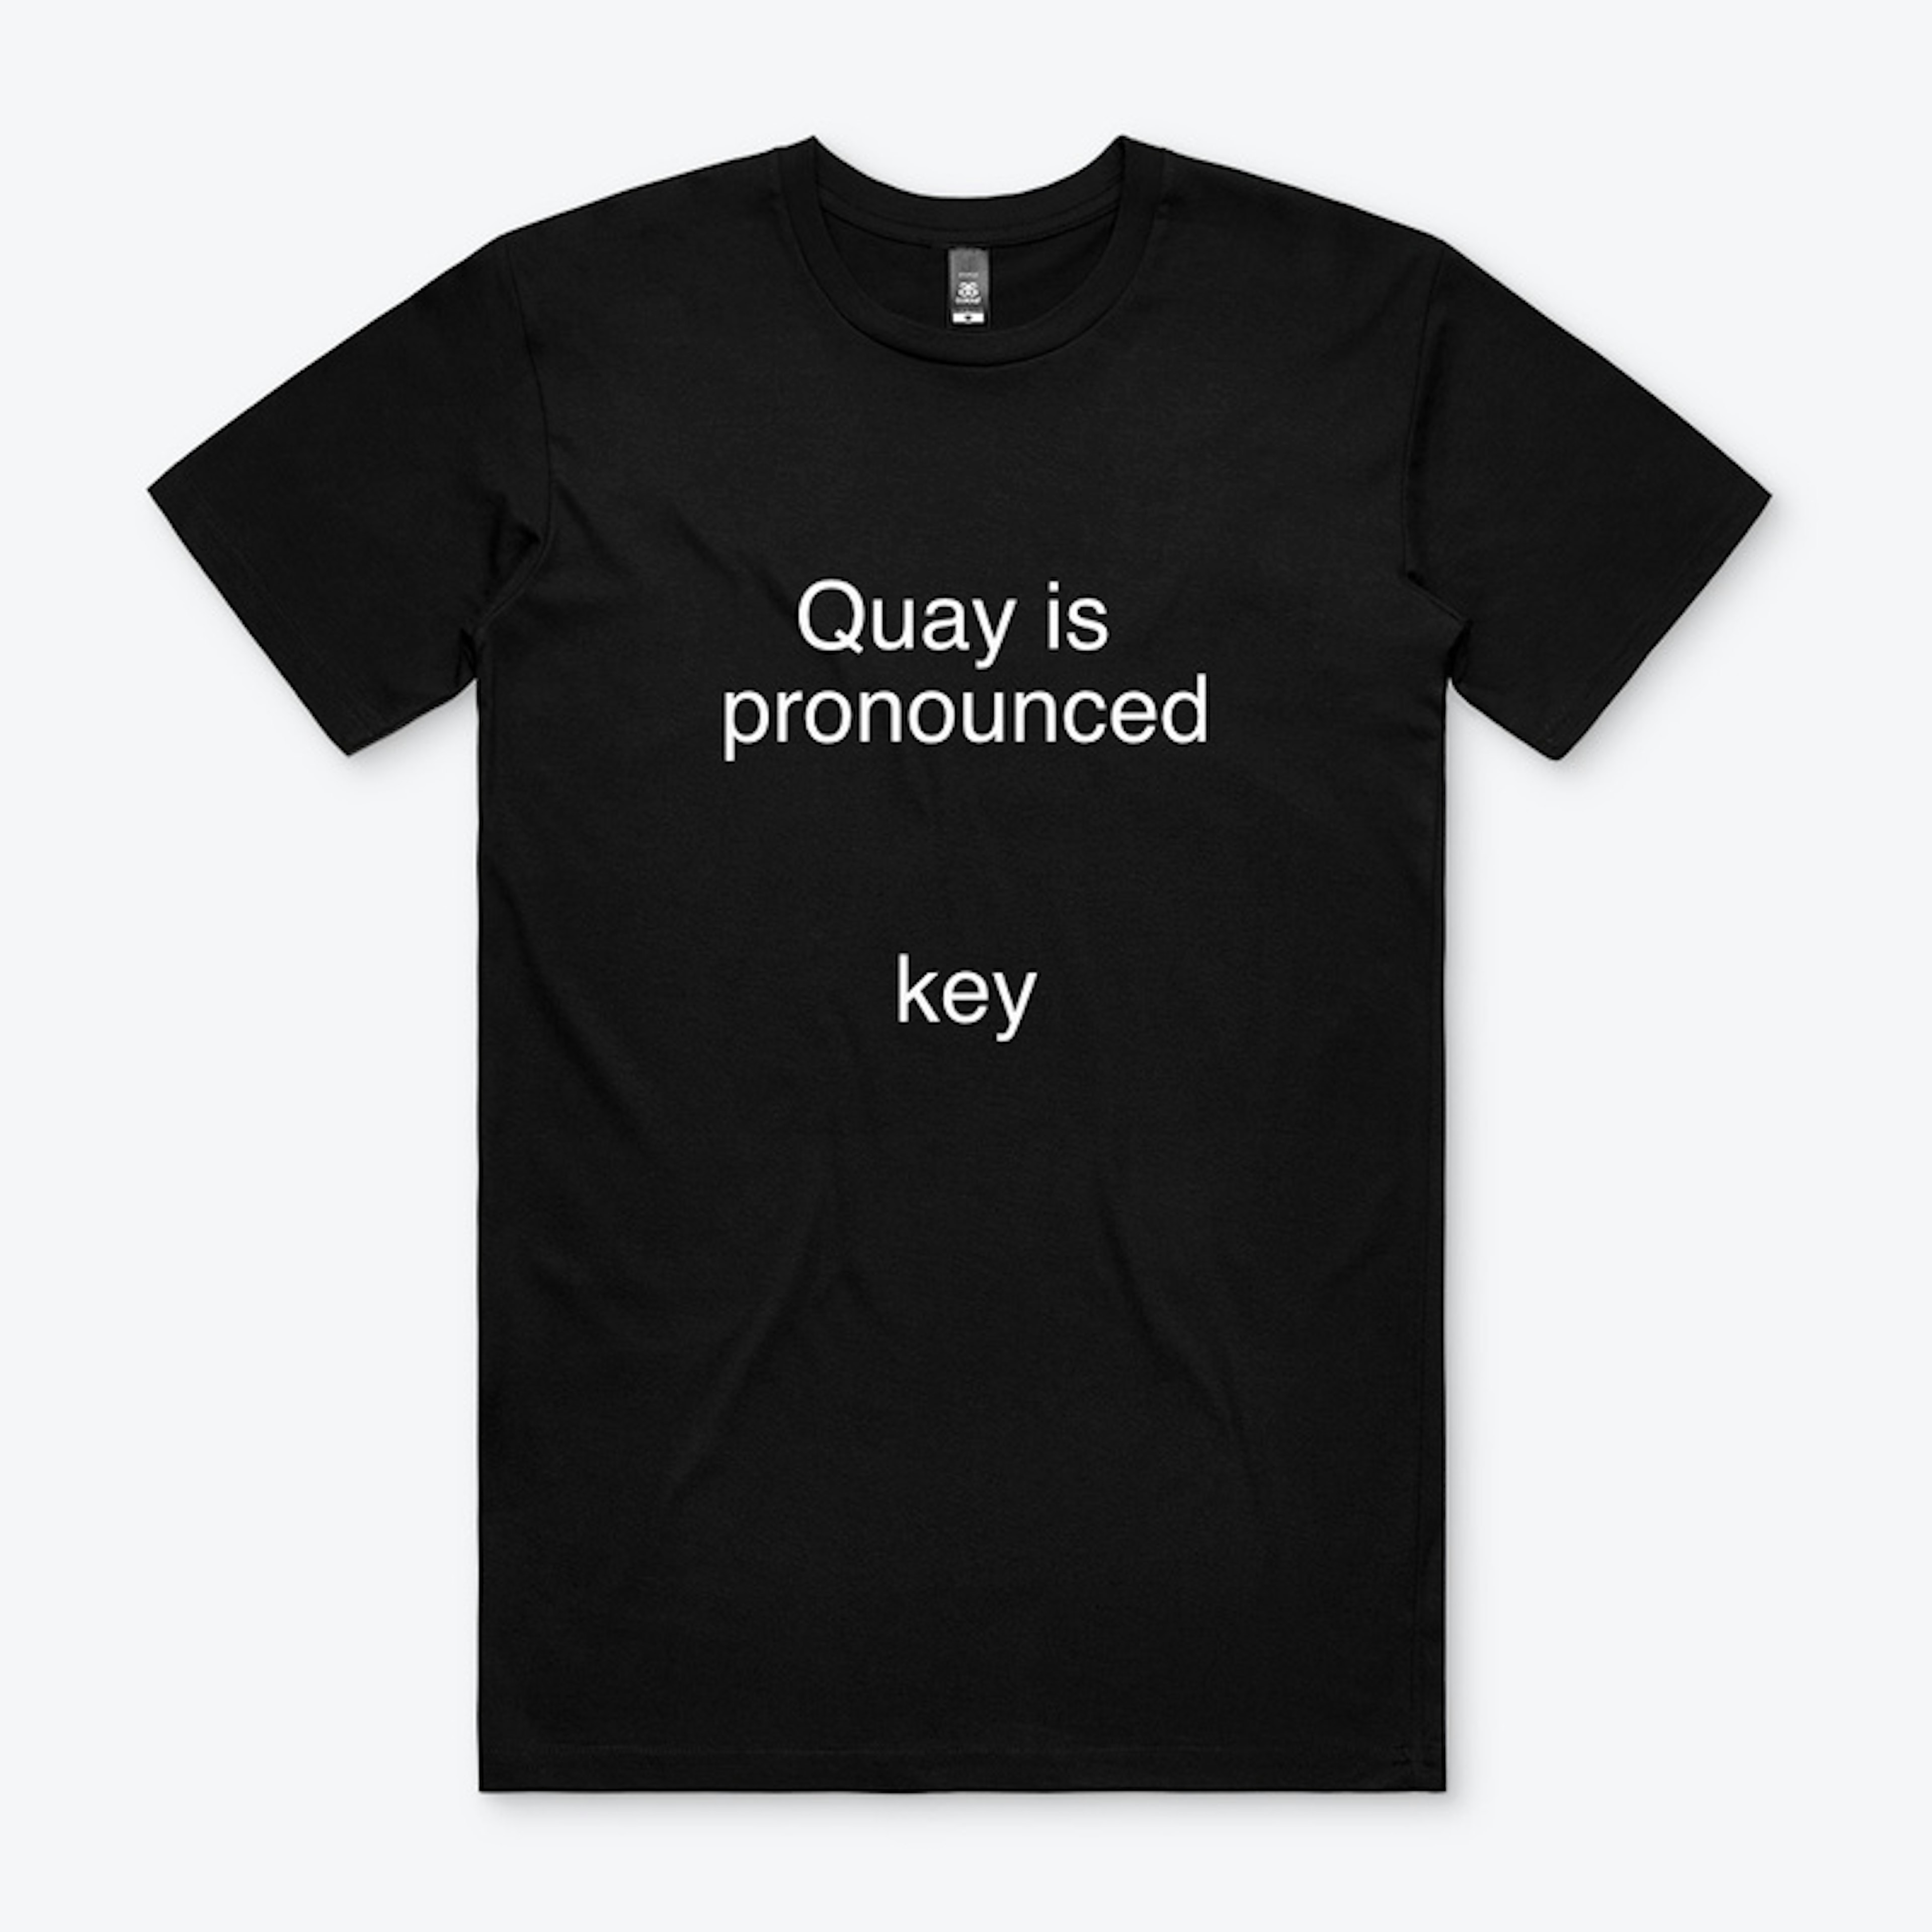 Quay is Key